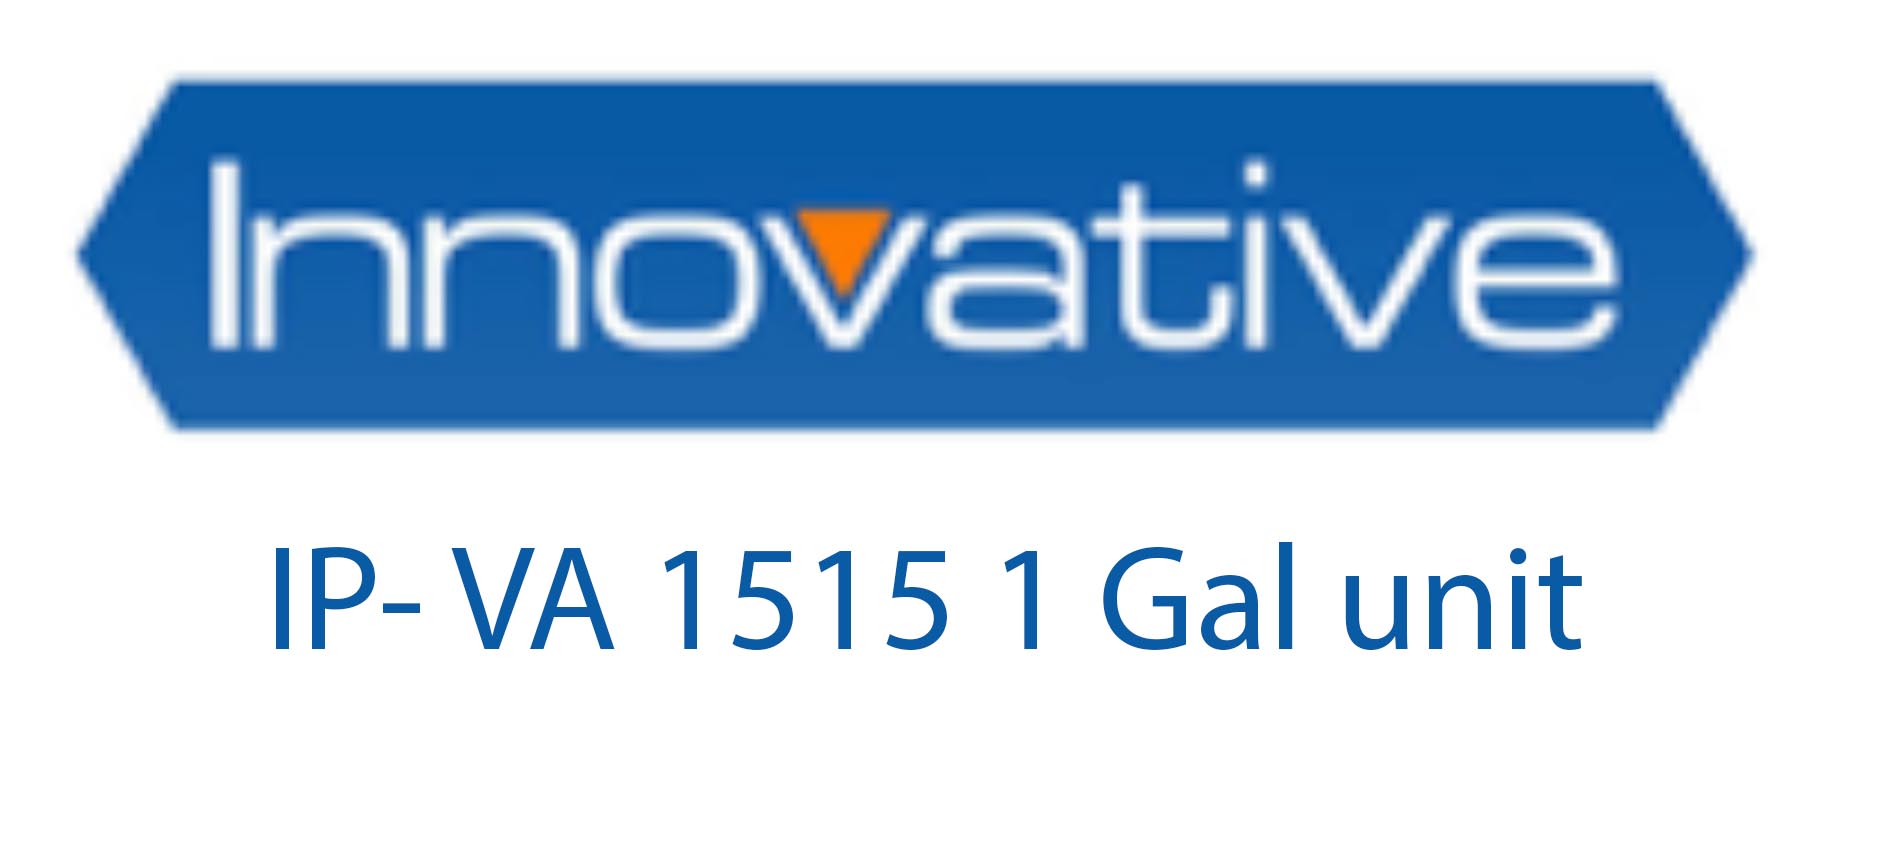 IP- VA 1515 1 Gal unit